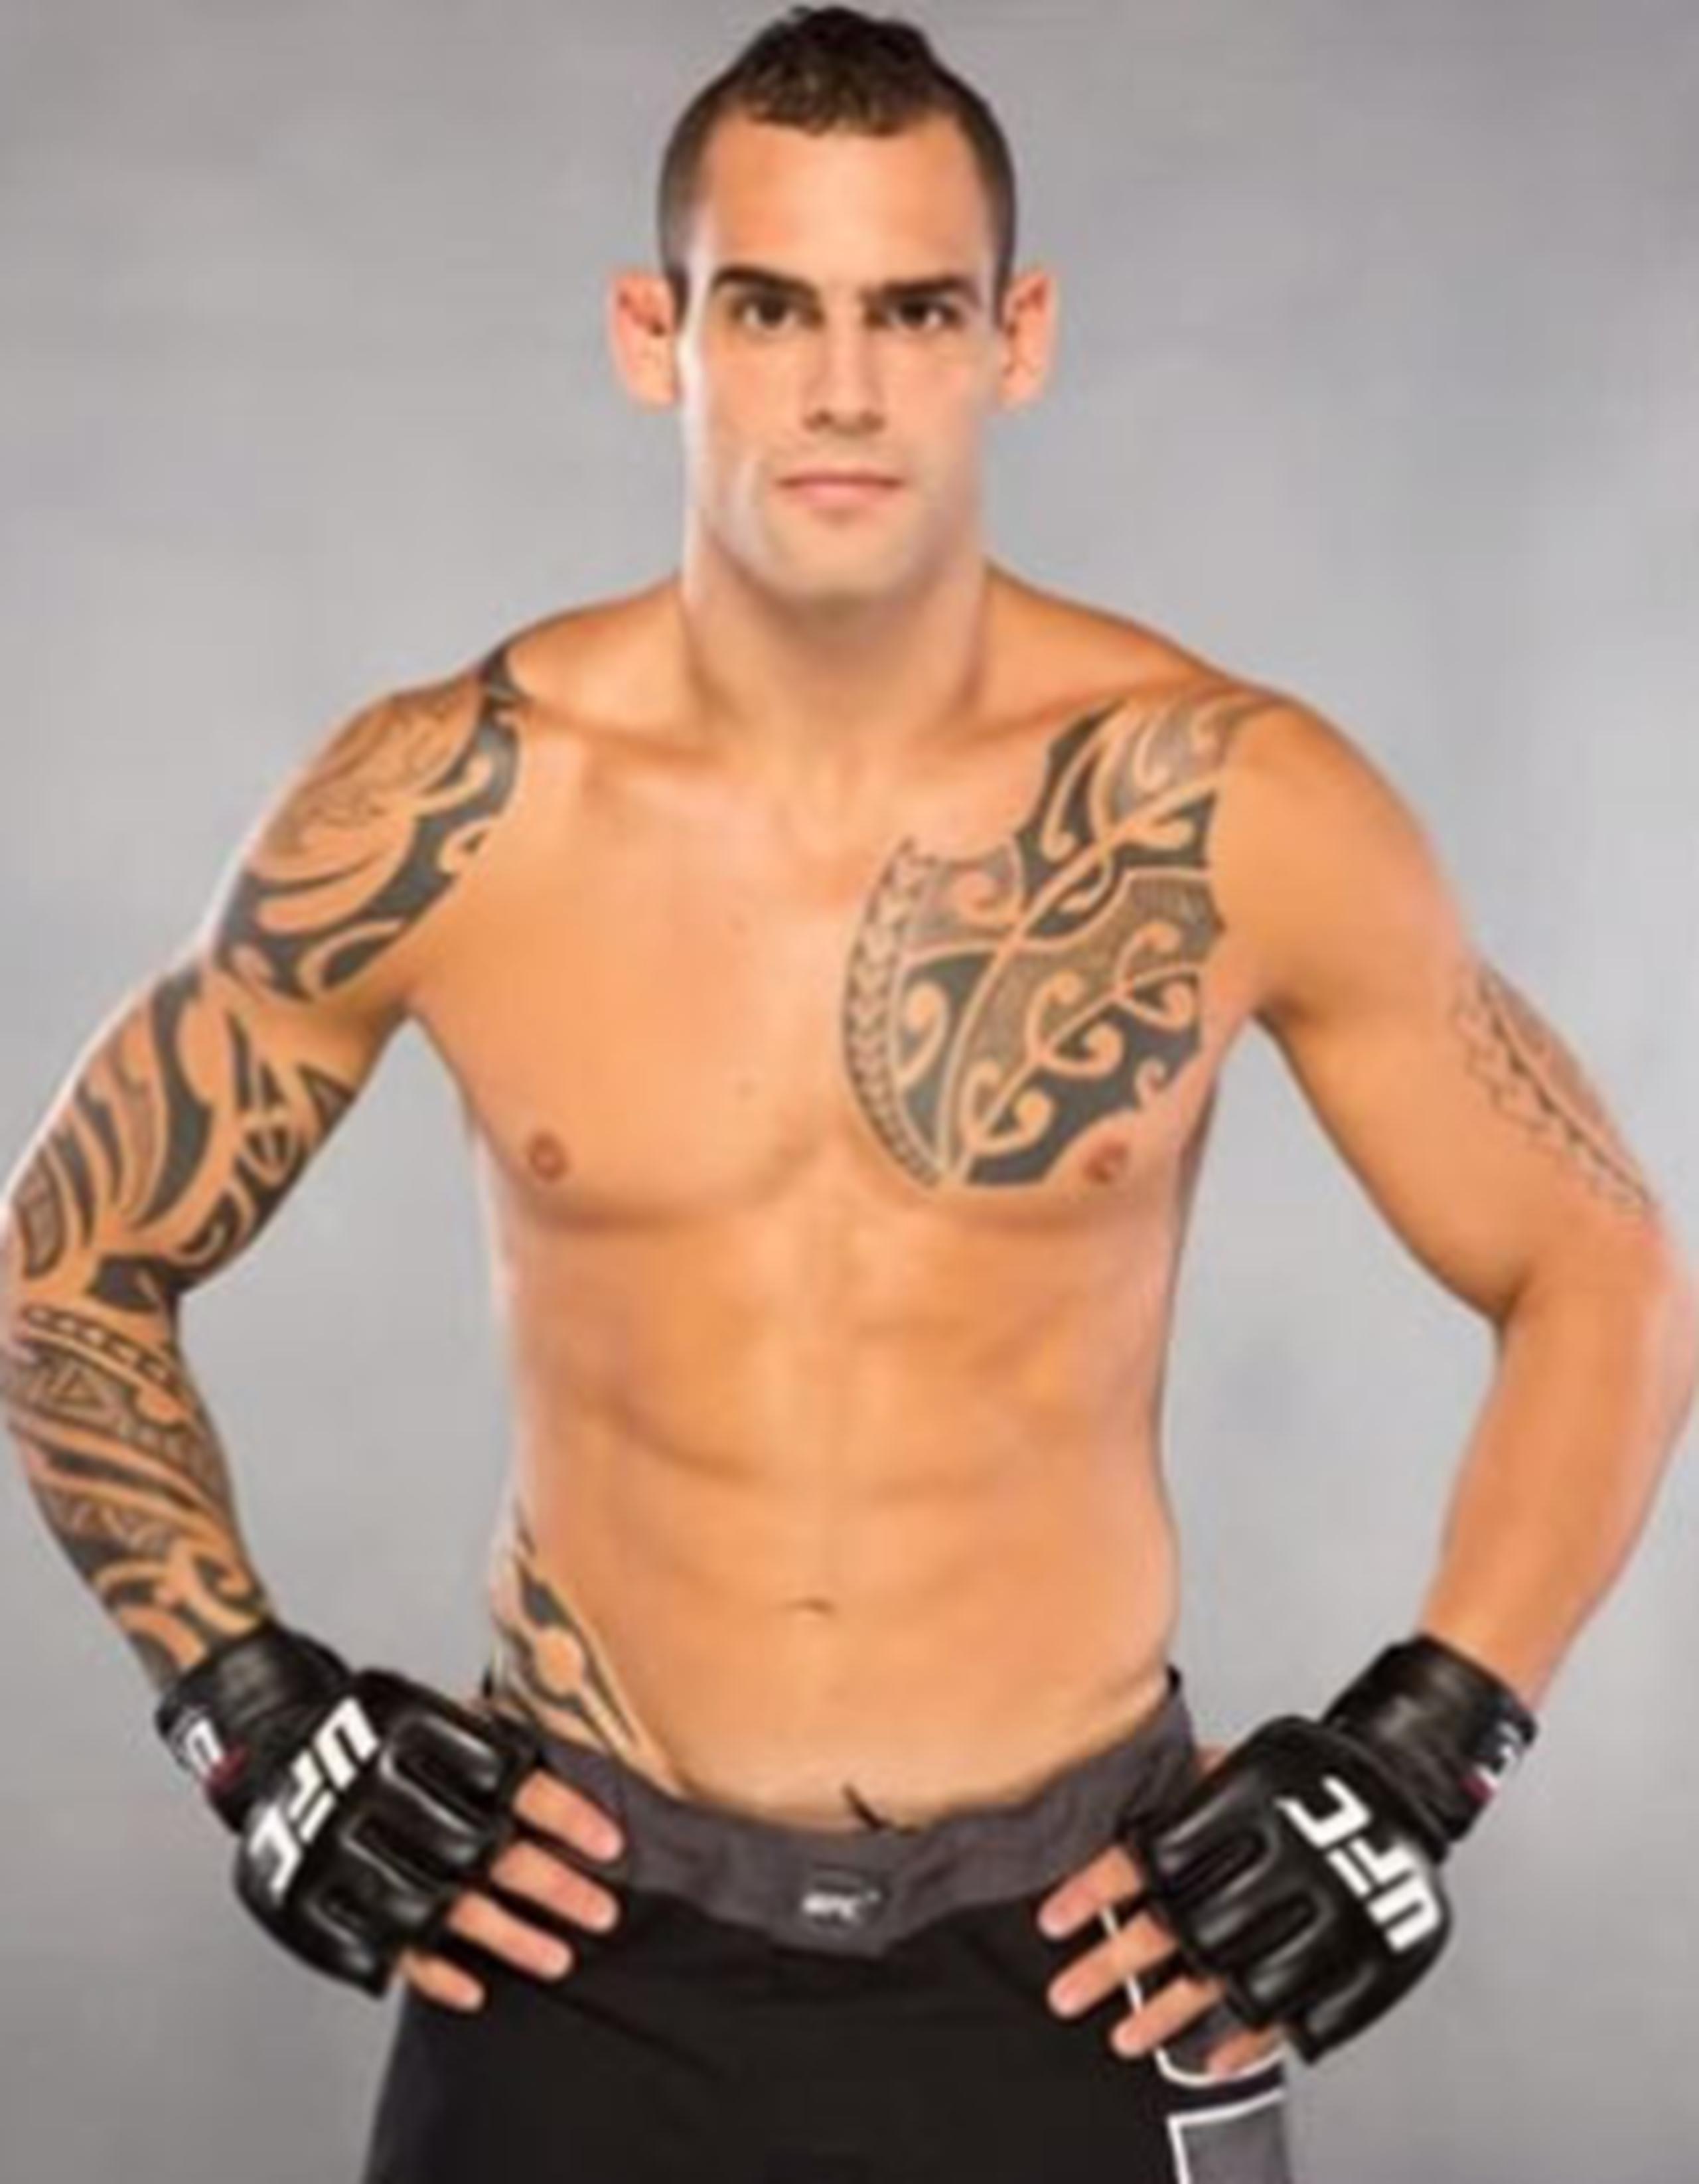 Santiago Ponzinnibio, oriundo de Buenos Aires, pero que entrena con Antonio “Minotauro” Nogueria en Brasil, se apuntó su victoria en el cartel principal de UFC Fight Night 51 en Brasilia. (Youtube)